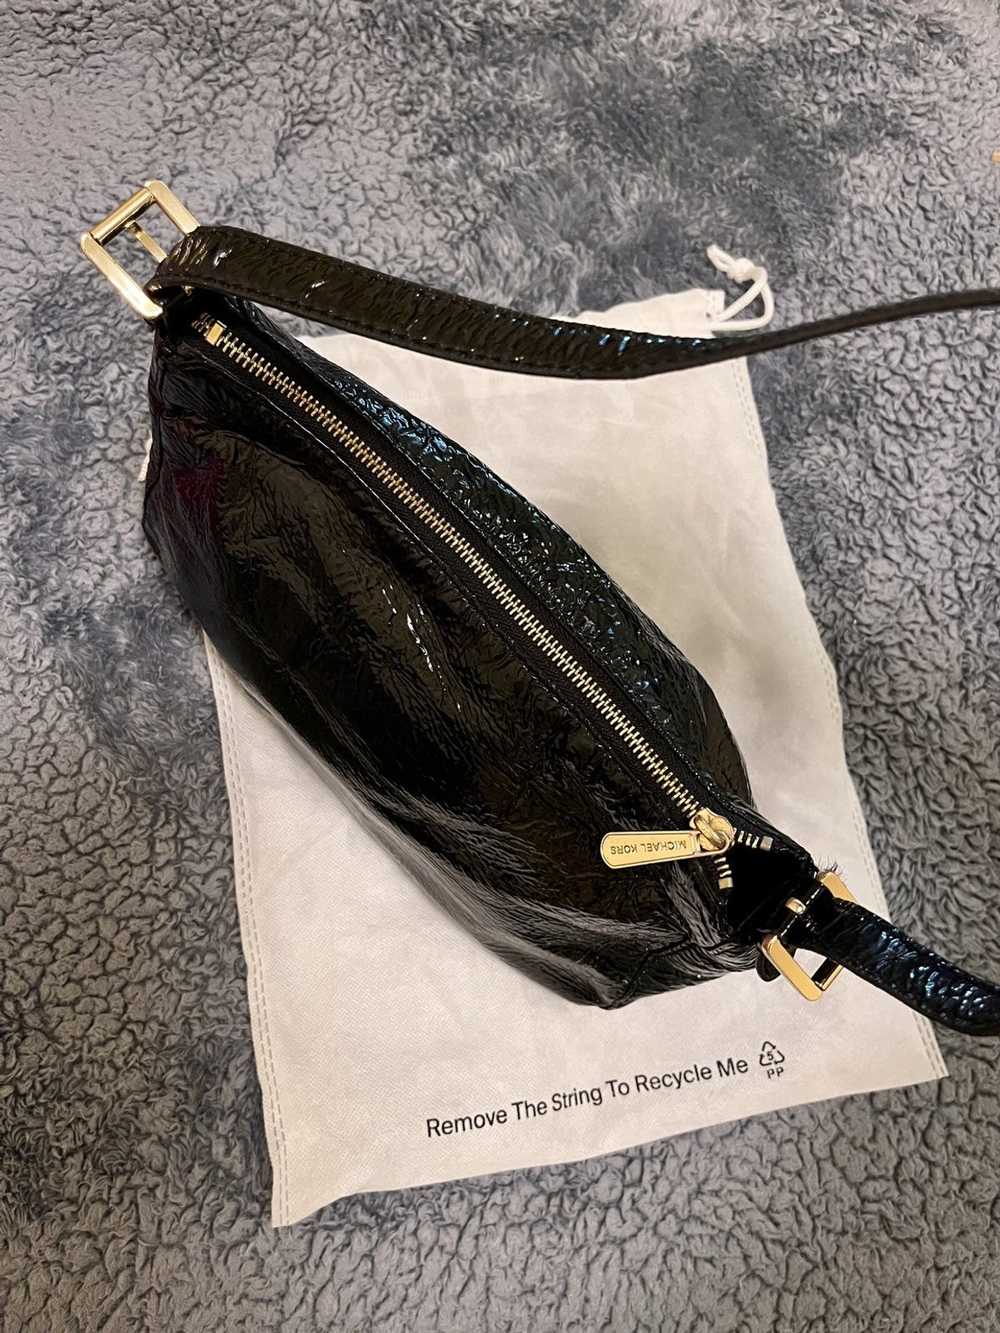 Michael Kors Black Shiny Leather Shoulder Bag - image 3